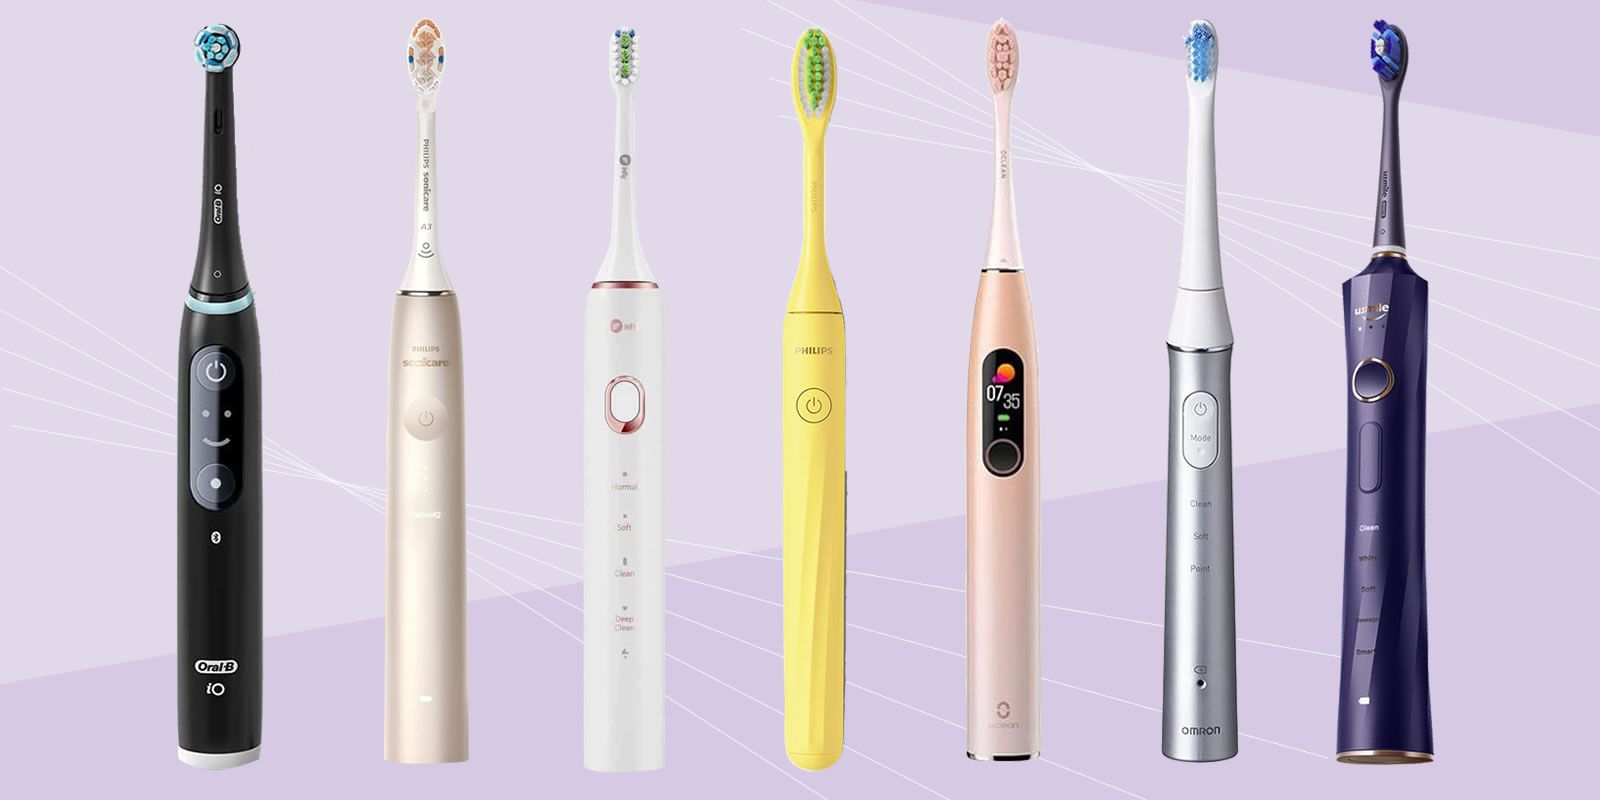 歯ブラシ/デンタルフロス電動歯ブラシ